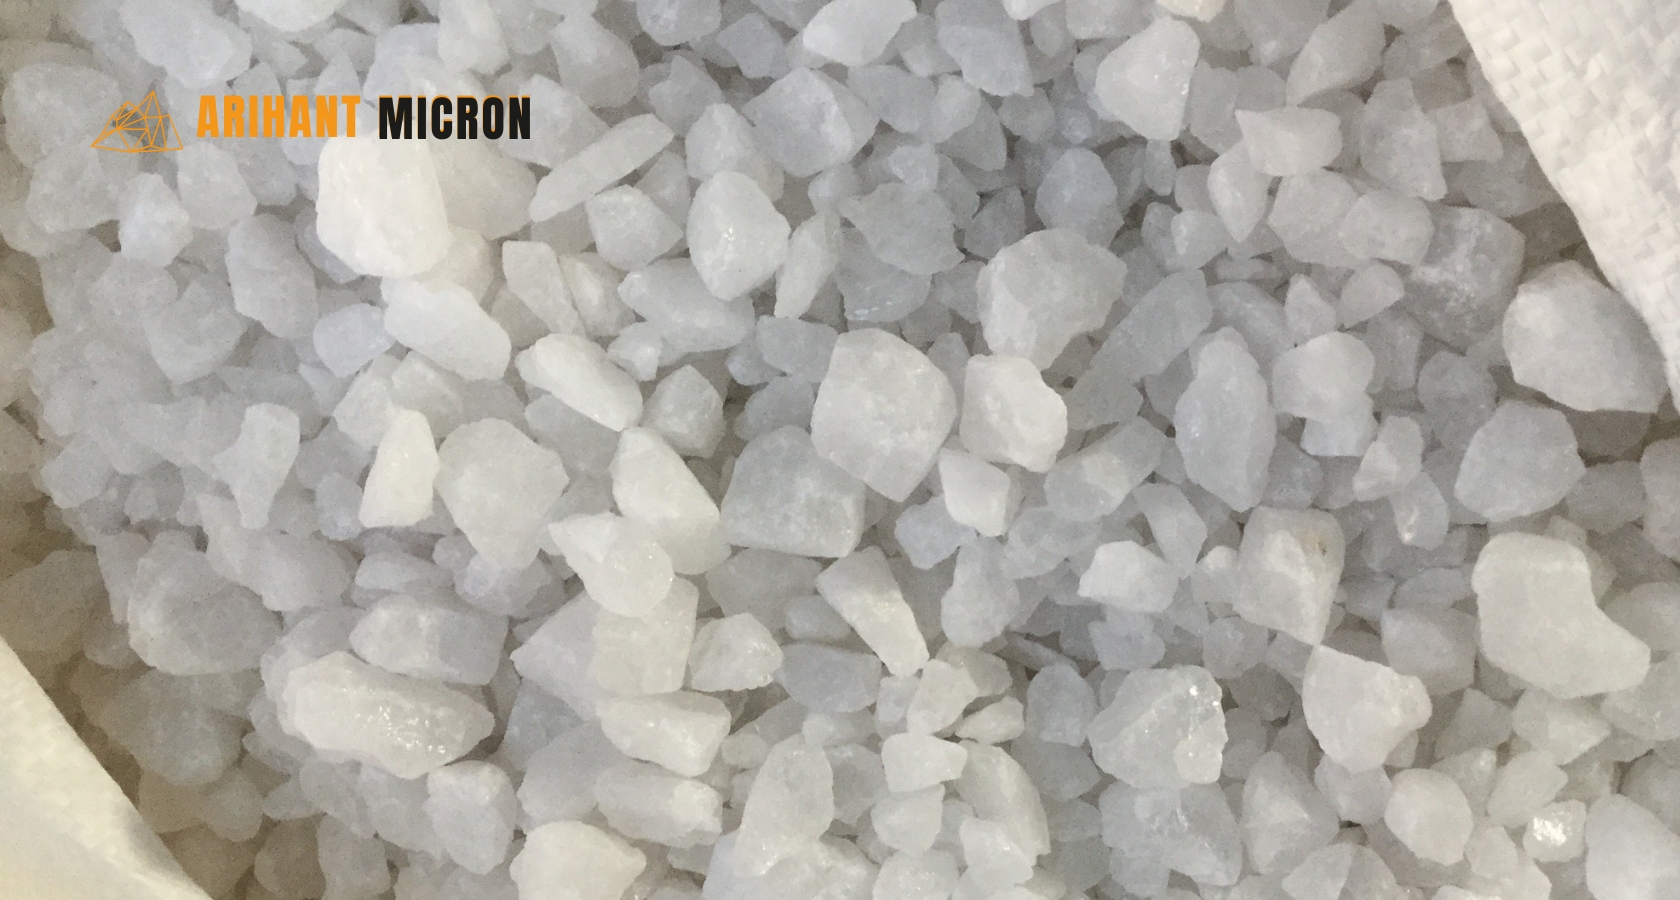 High purity quartz lumps - arihant micron